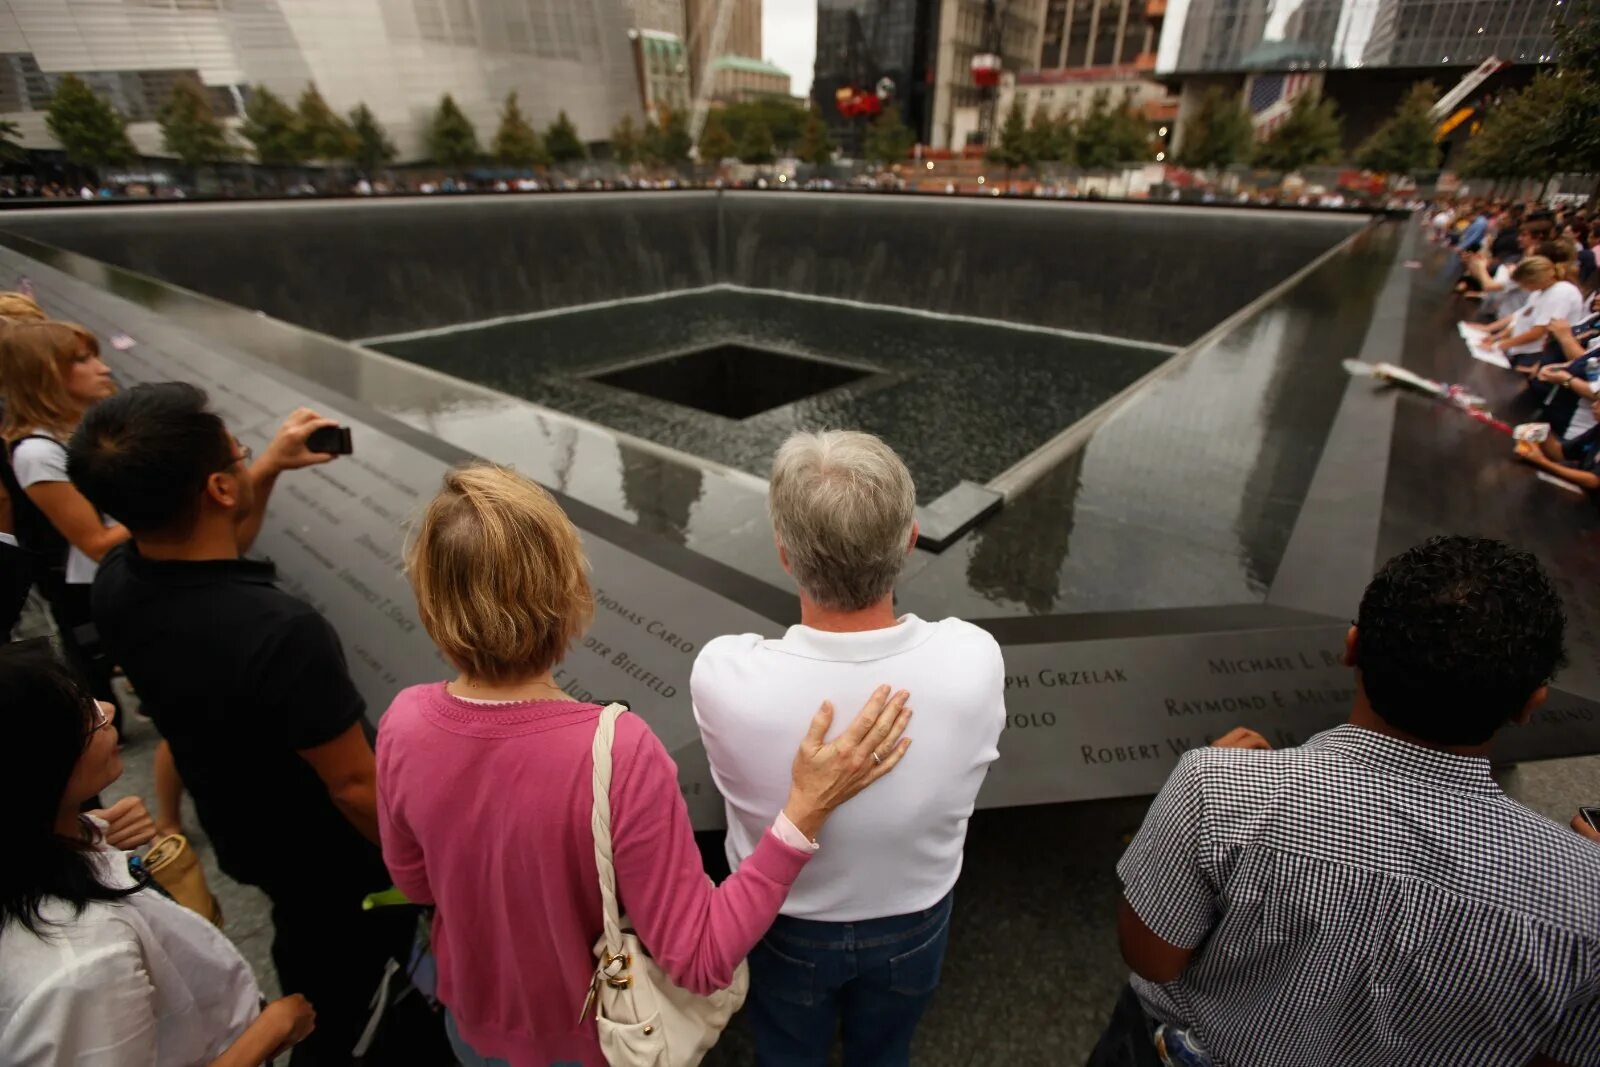 11 сентября сколько погибших 2001 башни. Башни-Близнецы 11 сентября 2001. Башни Близнецы 11 сентября жертвы. Теракт 11 сентября 2001 люди выпрыгивают.